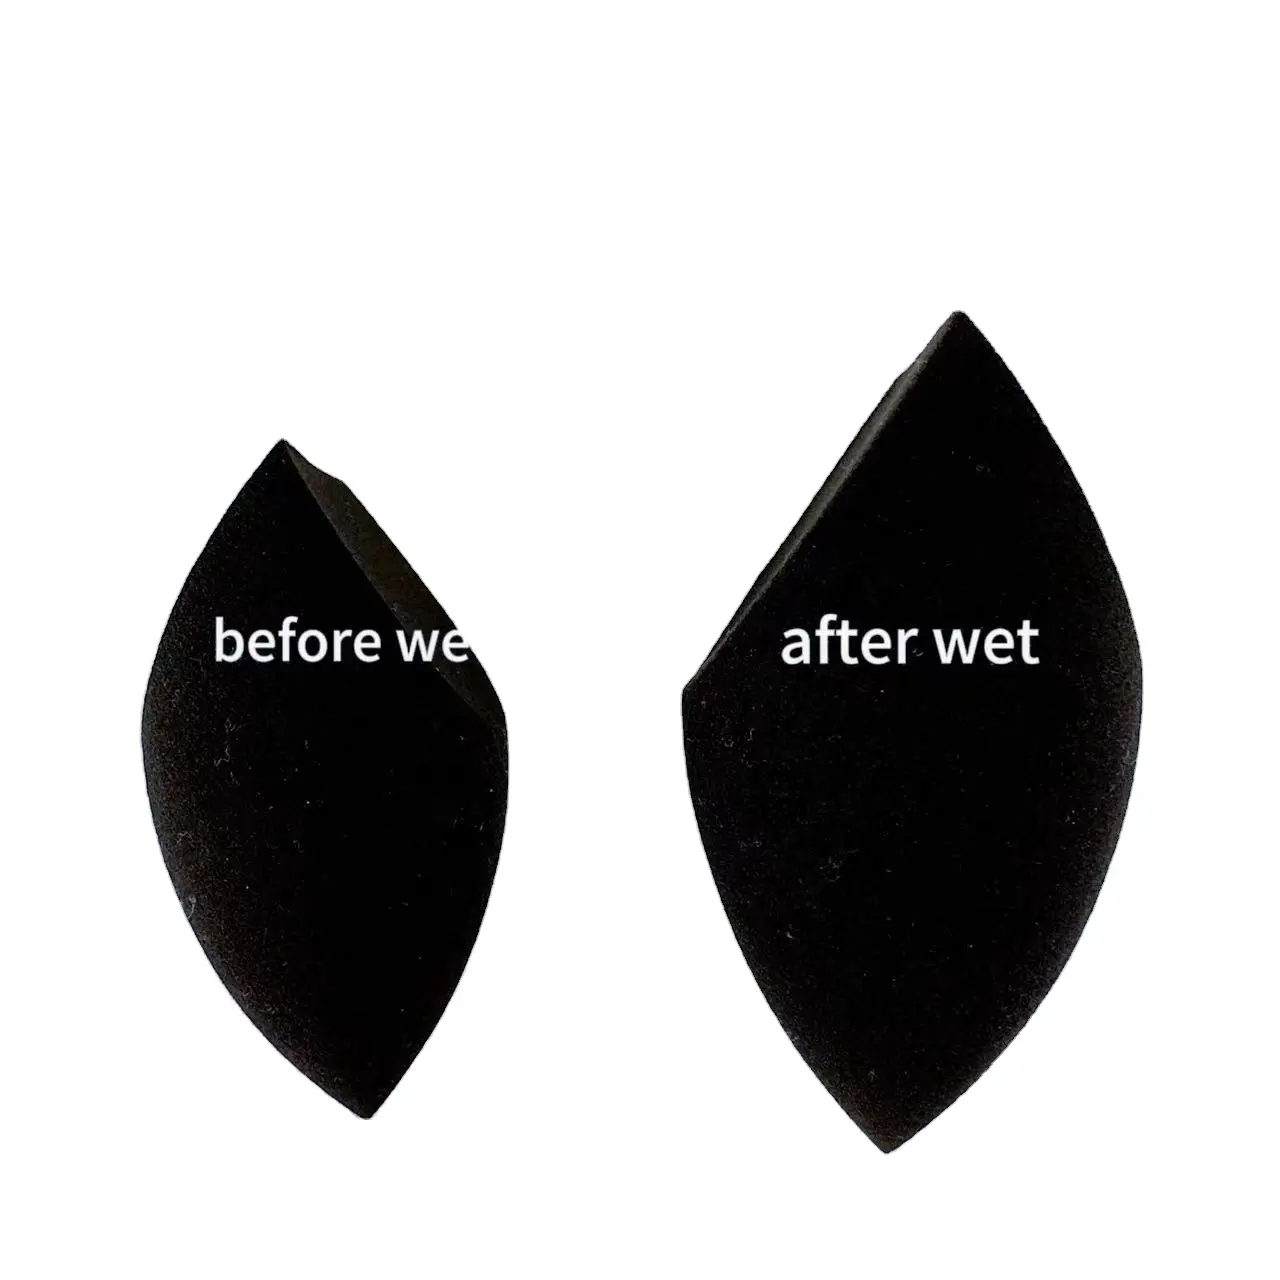 Esponja de maquiagem super macia preta dupla corte, maquiagem fácil e limpa, expansão rápida quando você molha, uma venda imperdível.